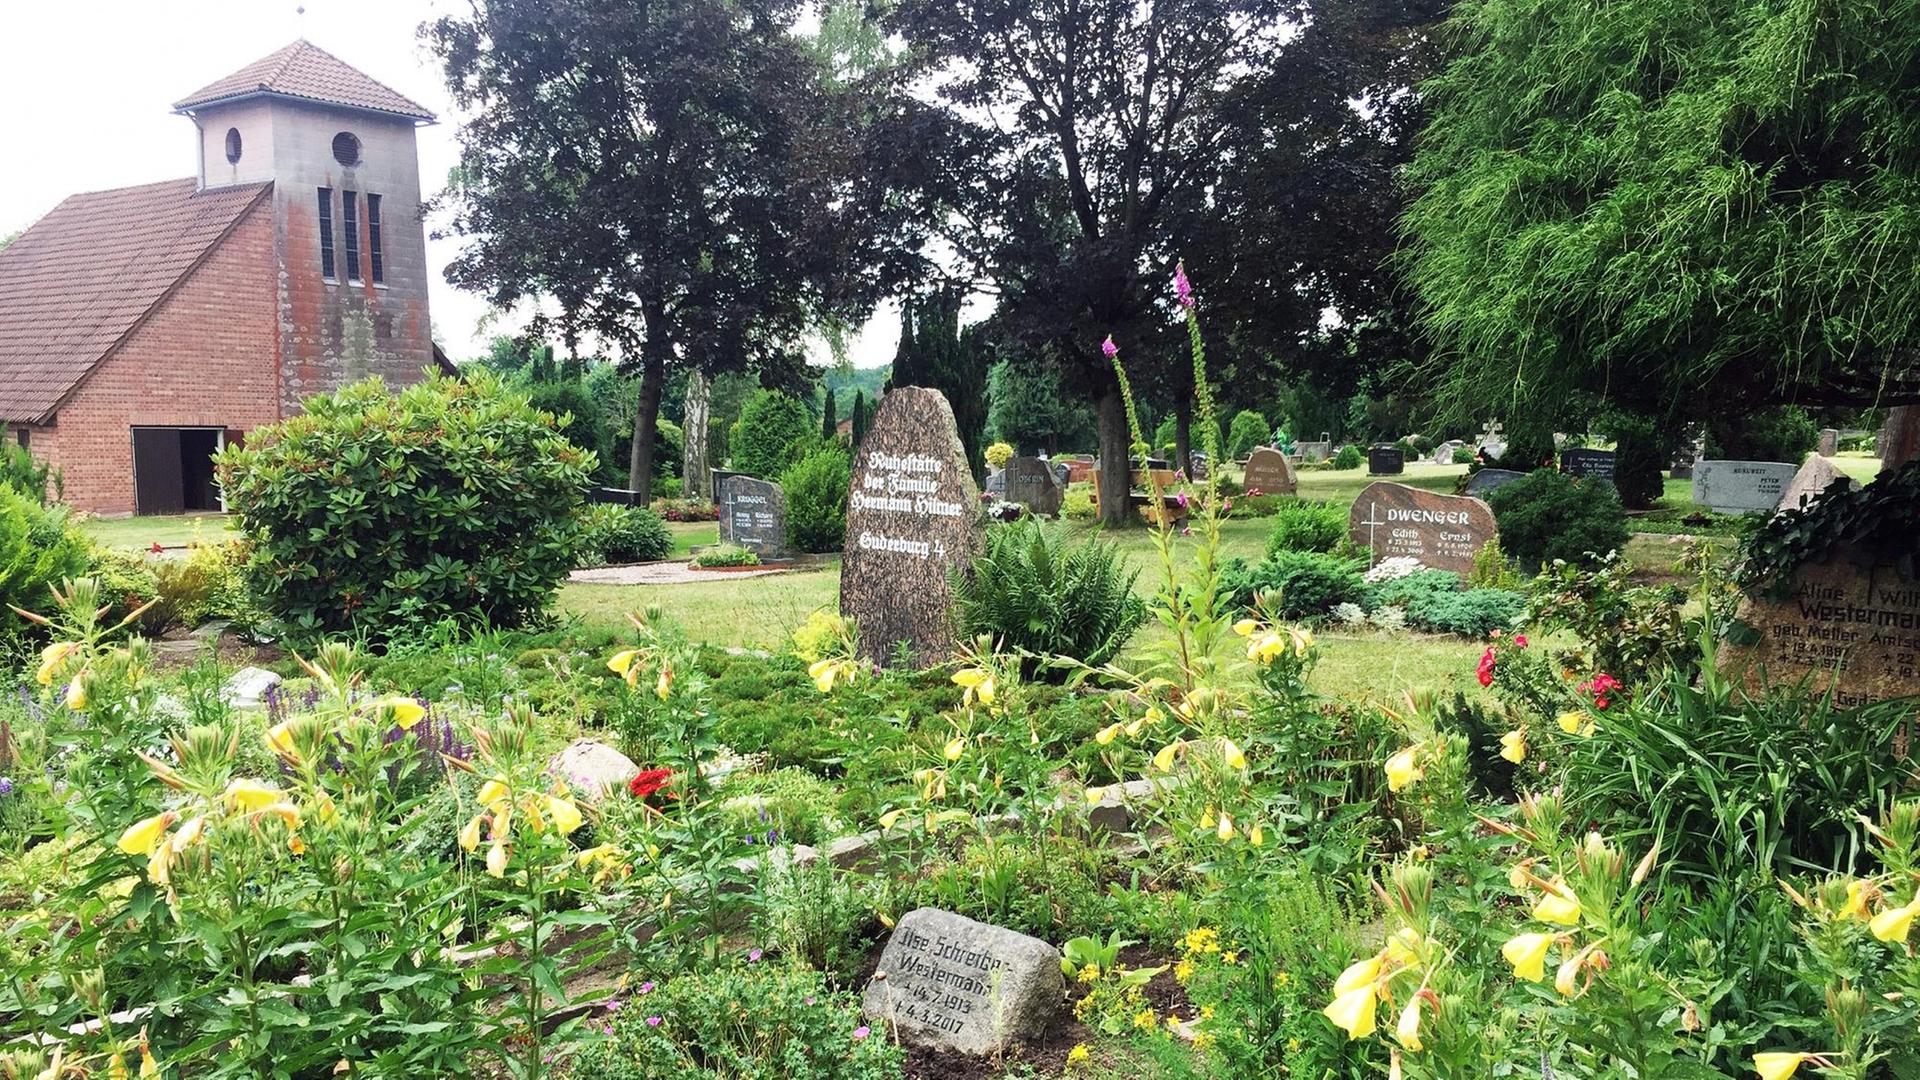 Blick auf ein Grabfeld mit kleinen auf dem Boden liegenden Grabplatten, drumherum üppiger Blumenwuchs mit gelben Blüten. Im Hintergrund Bäume und eine Friedhofskapelle aus Backstein.